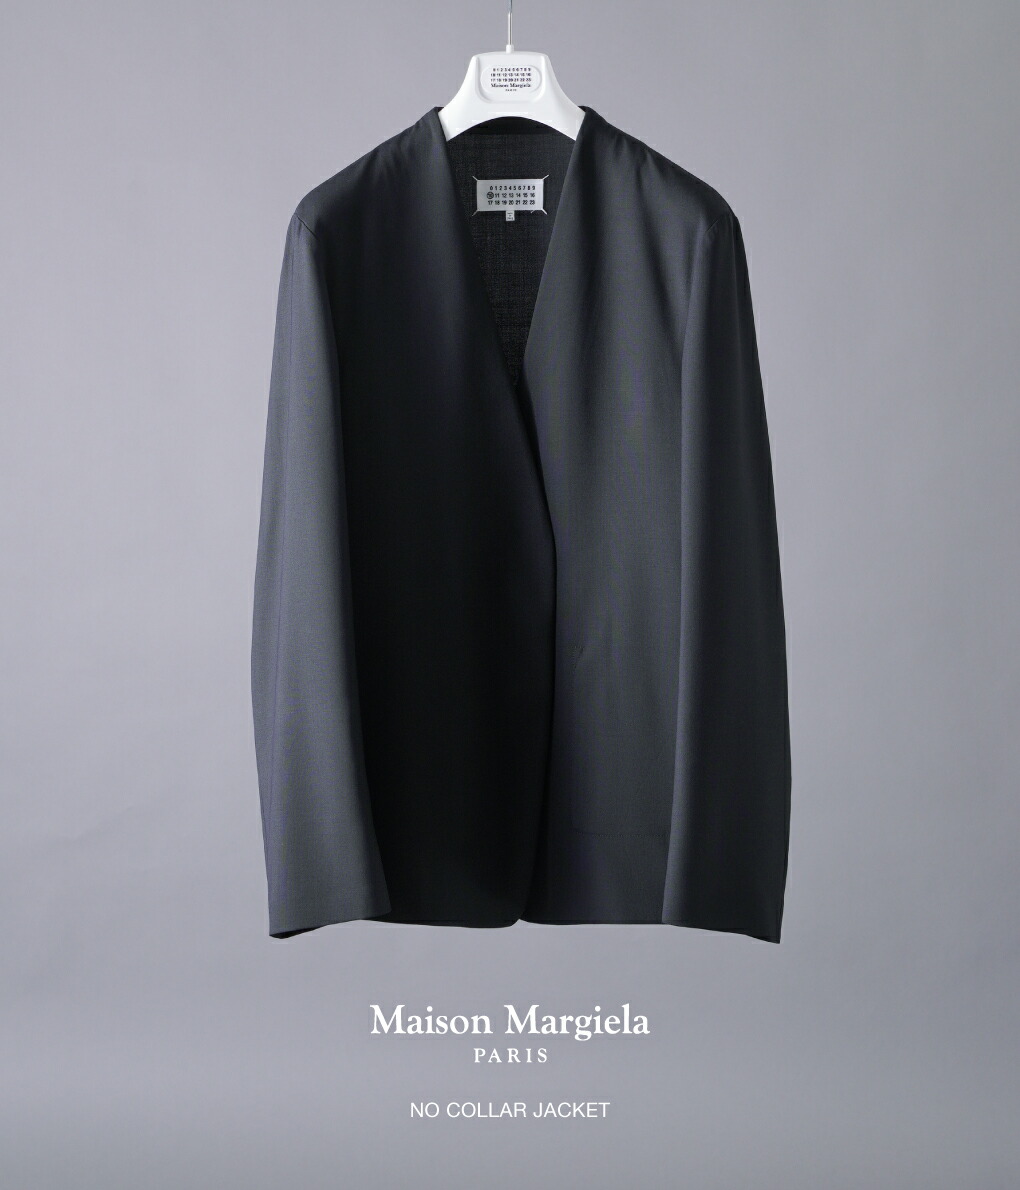 Maison Margiela / メゾン マルジェラ ： NO COLLAR JACKET ： S50BN0447-S44330